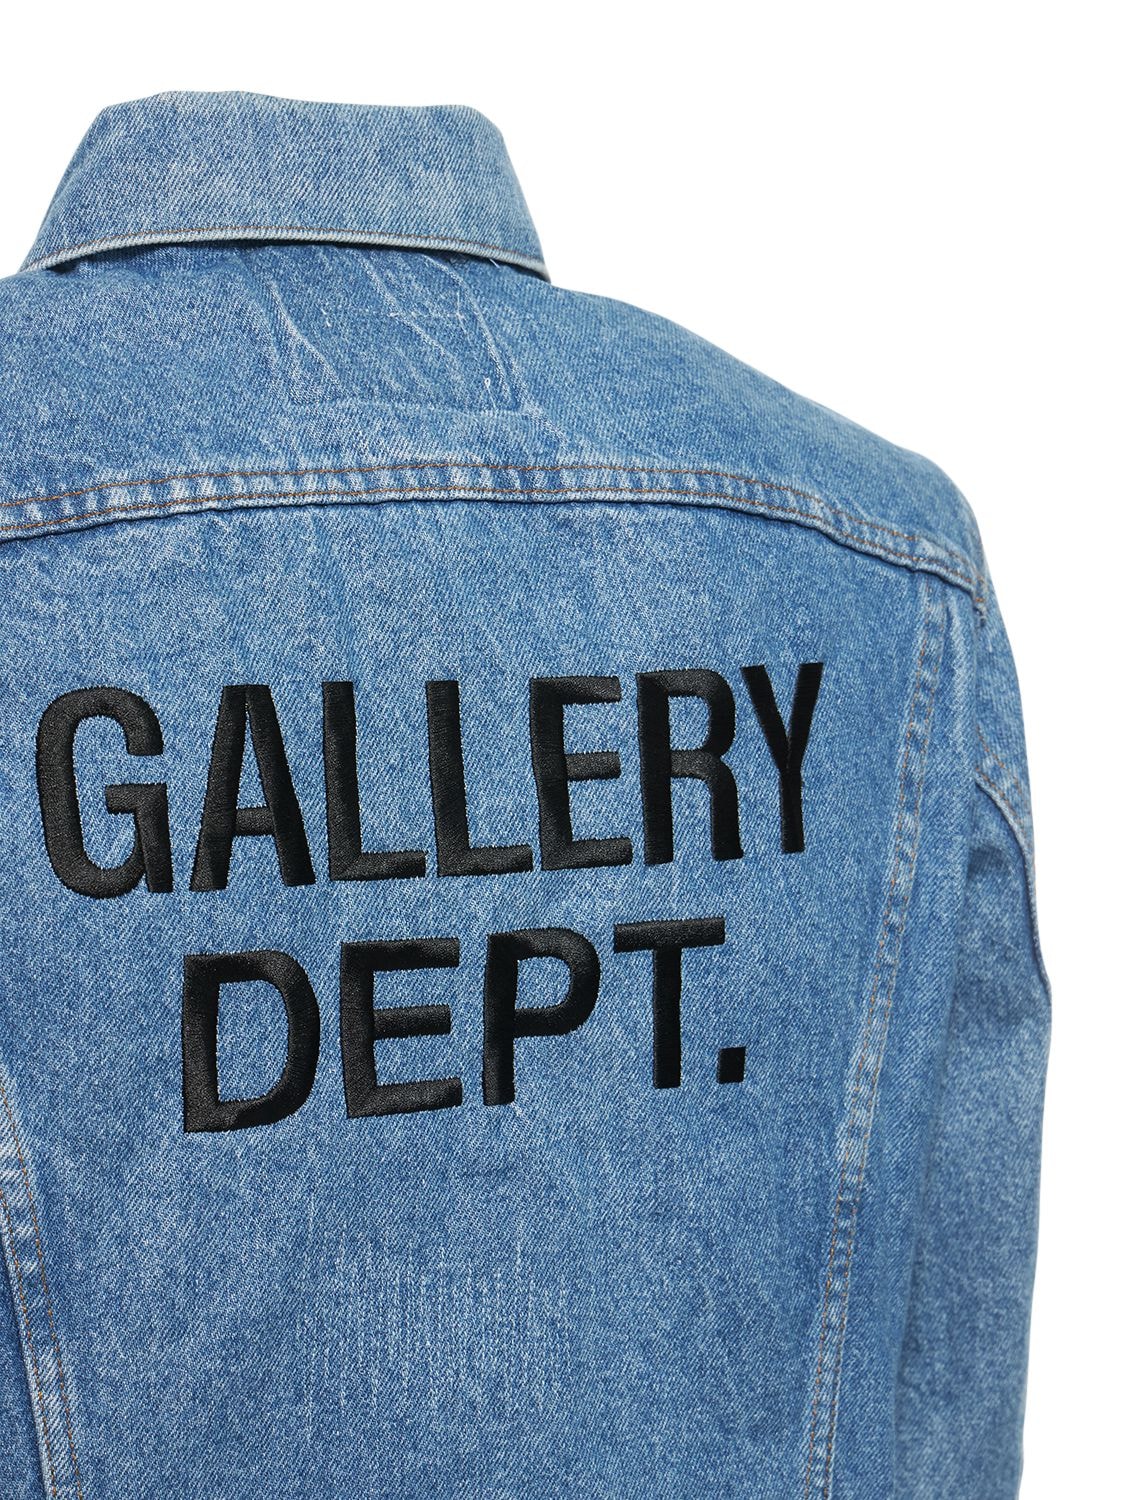 GALLERY DEPT. Andy Vintage Denim Jacket | Smart Closet